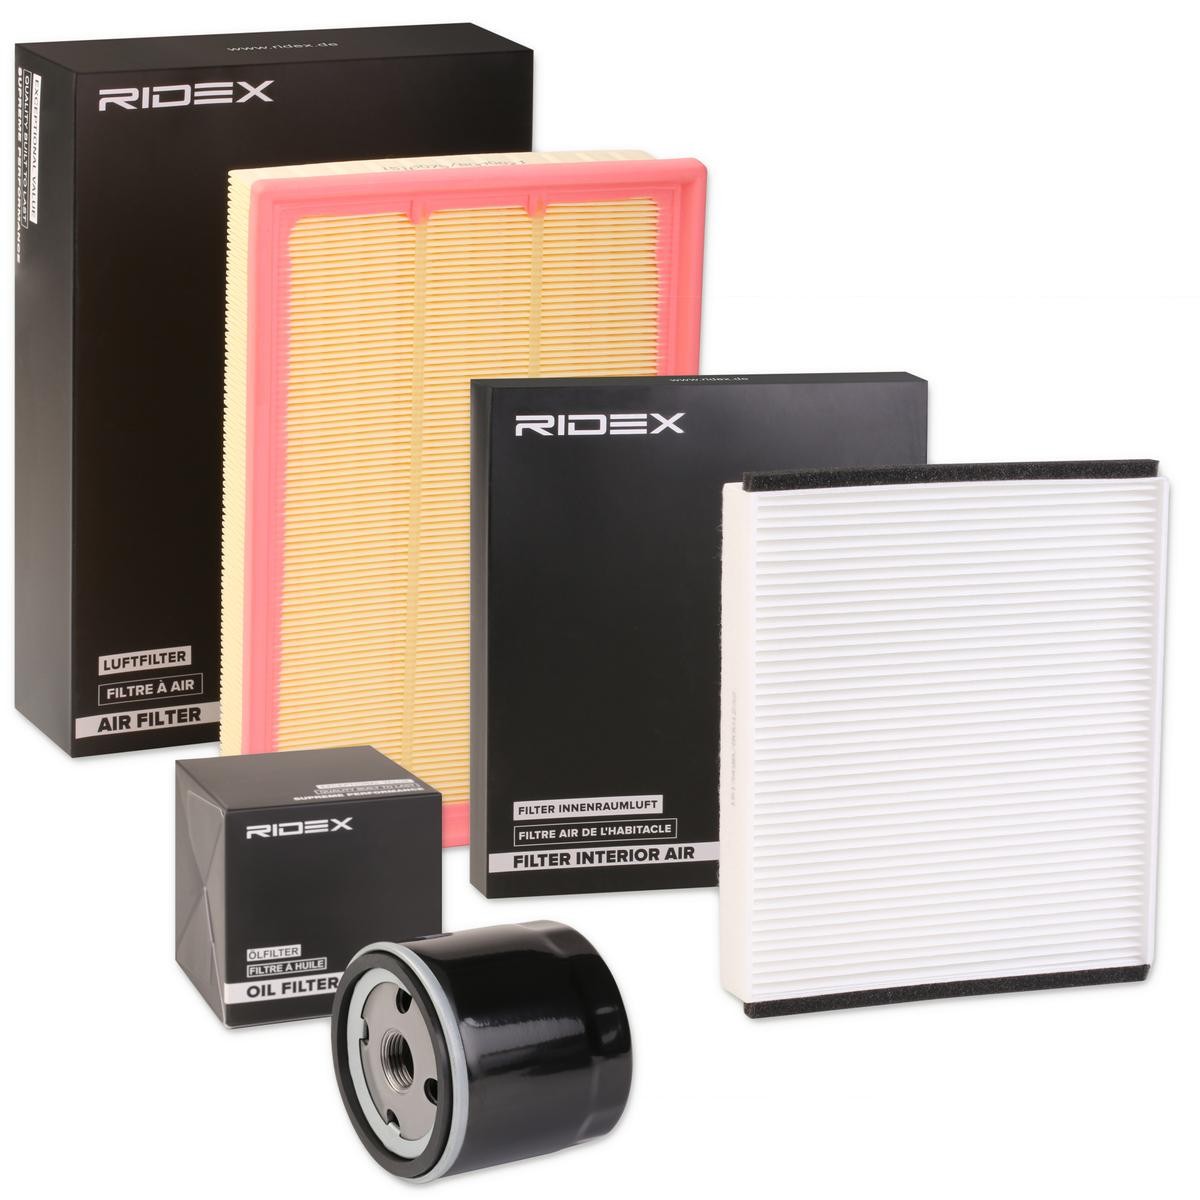 RIDEX 4055F3413 originali VOLVO Kit filtri con filtro aria, senza vite spurgo olio